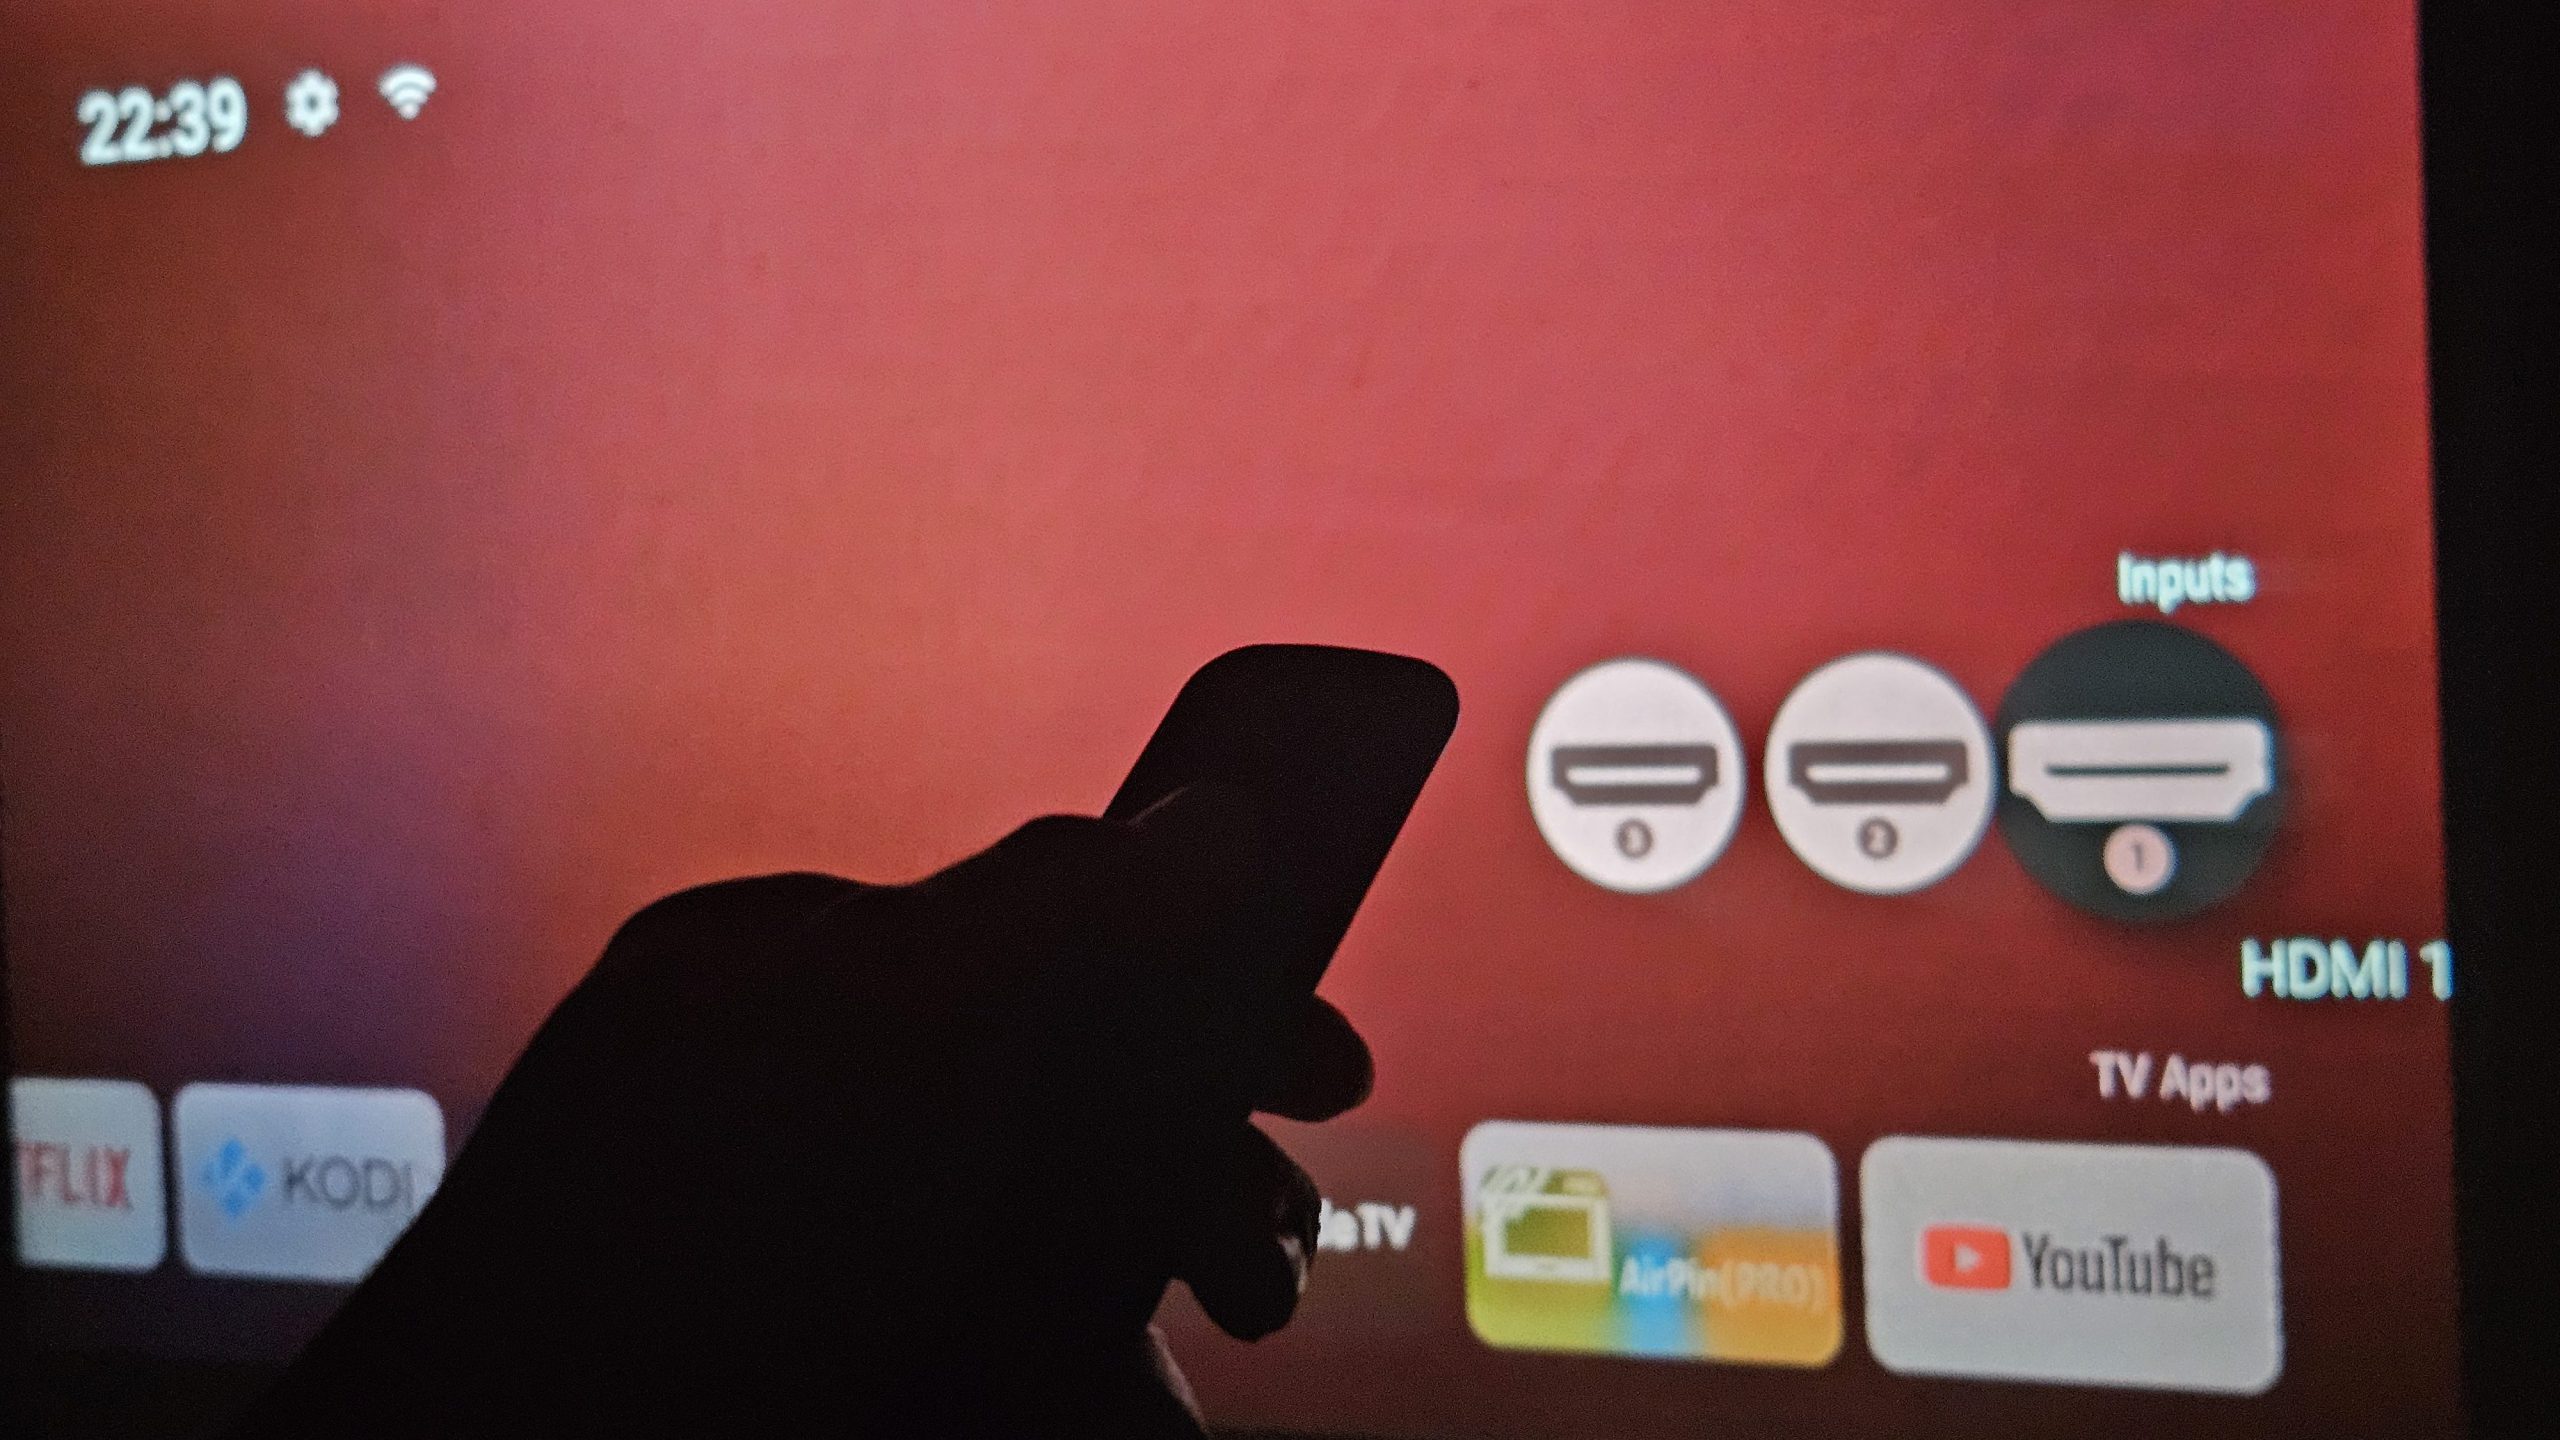 התמונה מציגה יד שחורה גדולה ומטושטשת מצביעה או בוחרת אפליקציה על ממשק חוויה אדום של מקרן HY320 ביתי. ניתן לראות סמלי אפליקציות מוכרות כמו נטפליקס, קודי, YouTube ועוד. היד הגדולה מרמזת על בחירה או שימוש בתוכן ובשירותי מדיה דיגיטליים. הצבעים האדומים והשחורים מעניקים מראה עז וצבעוני לממשק המסך.